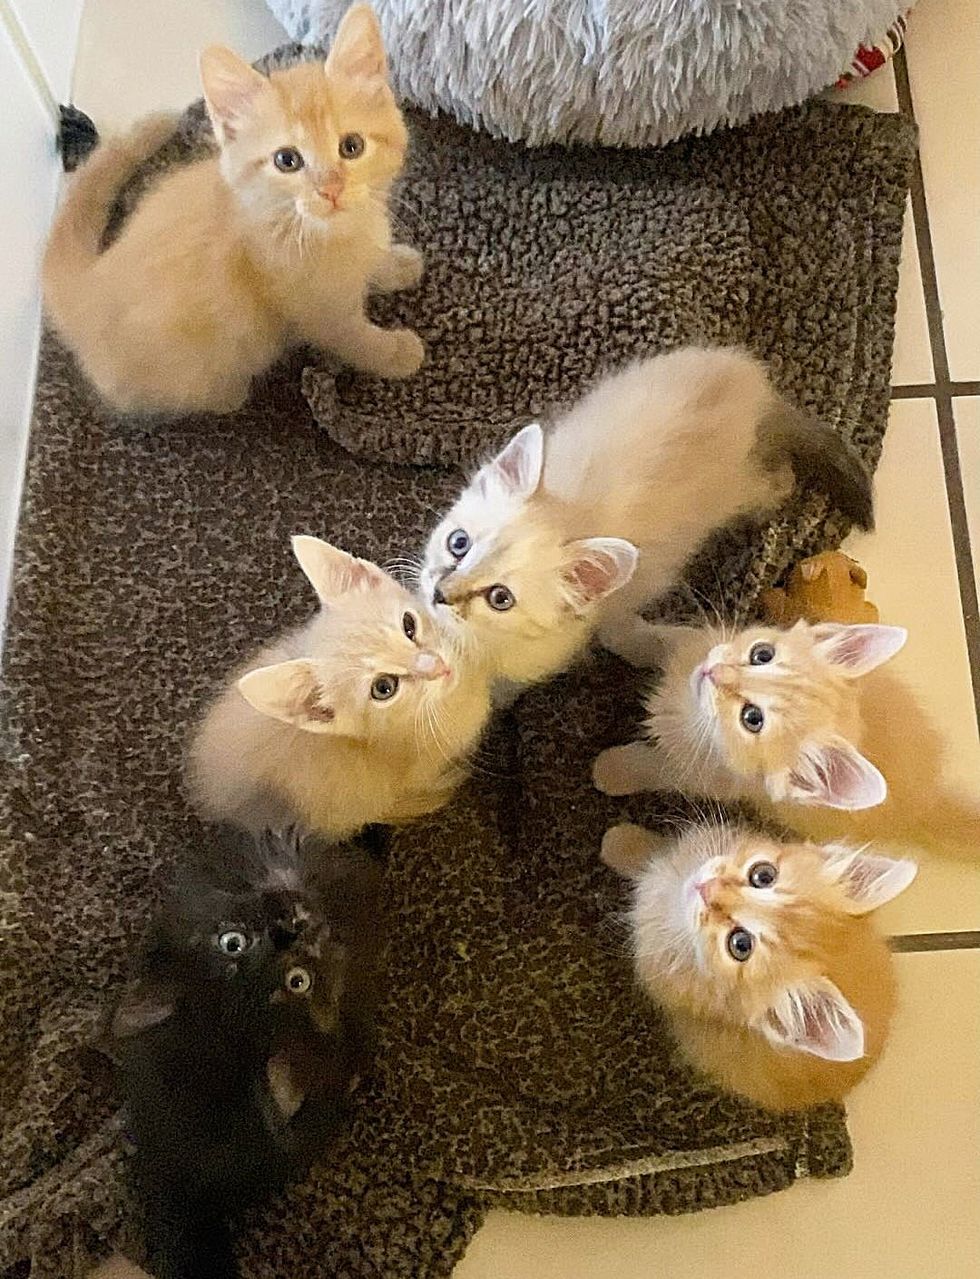 kittens looking breakfast